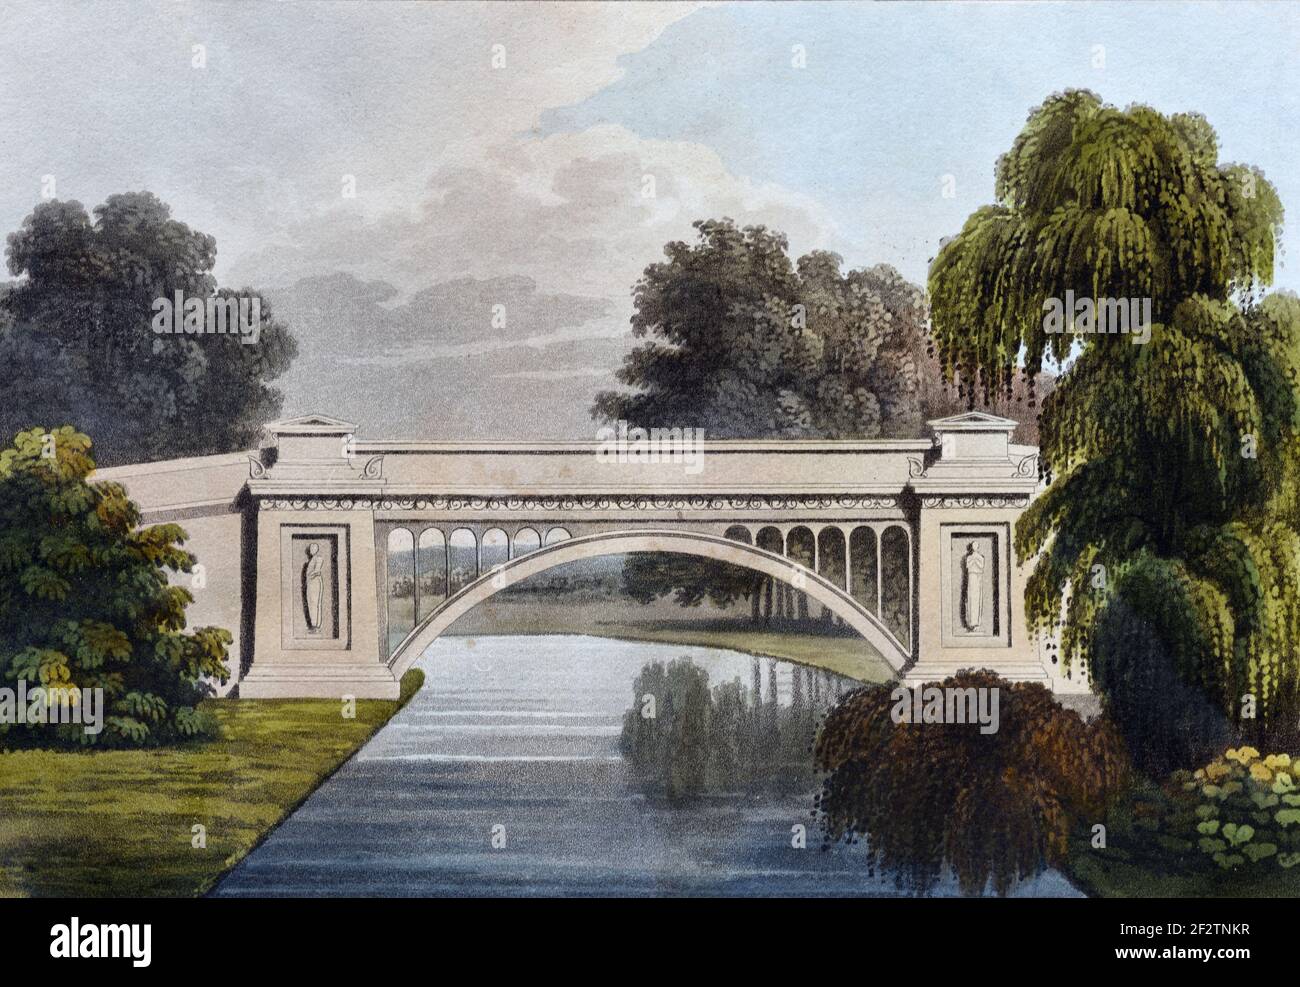 Neoklassische Brücke oder klassische Brücke über den See auf englischem Landgut (1827) Vintage Architectural Drawing, Aquatint or Engraving von James Thomson (1827) Stockfoto